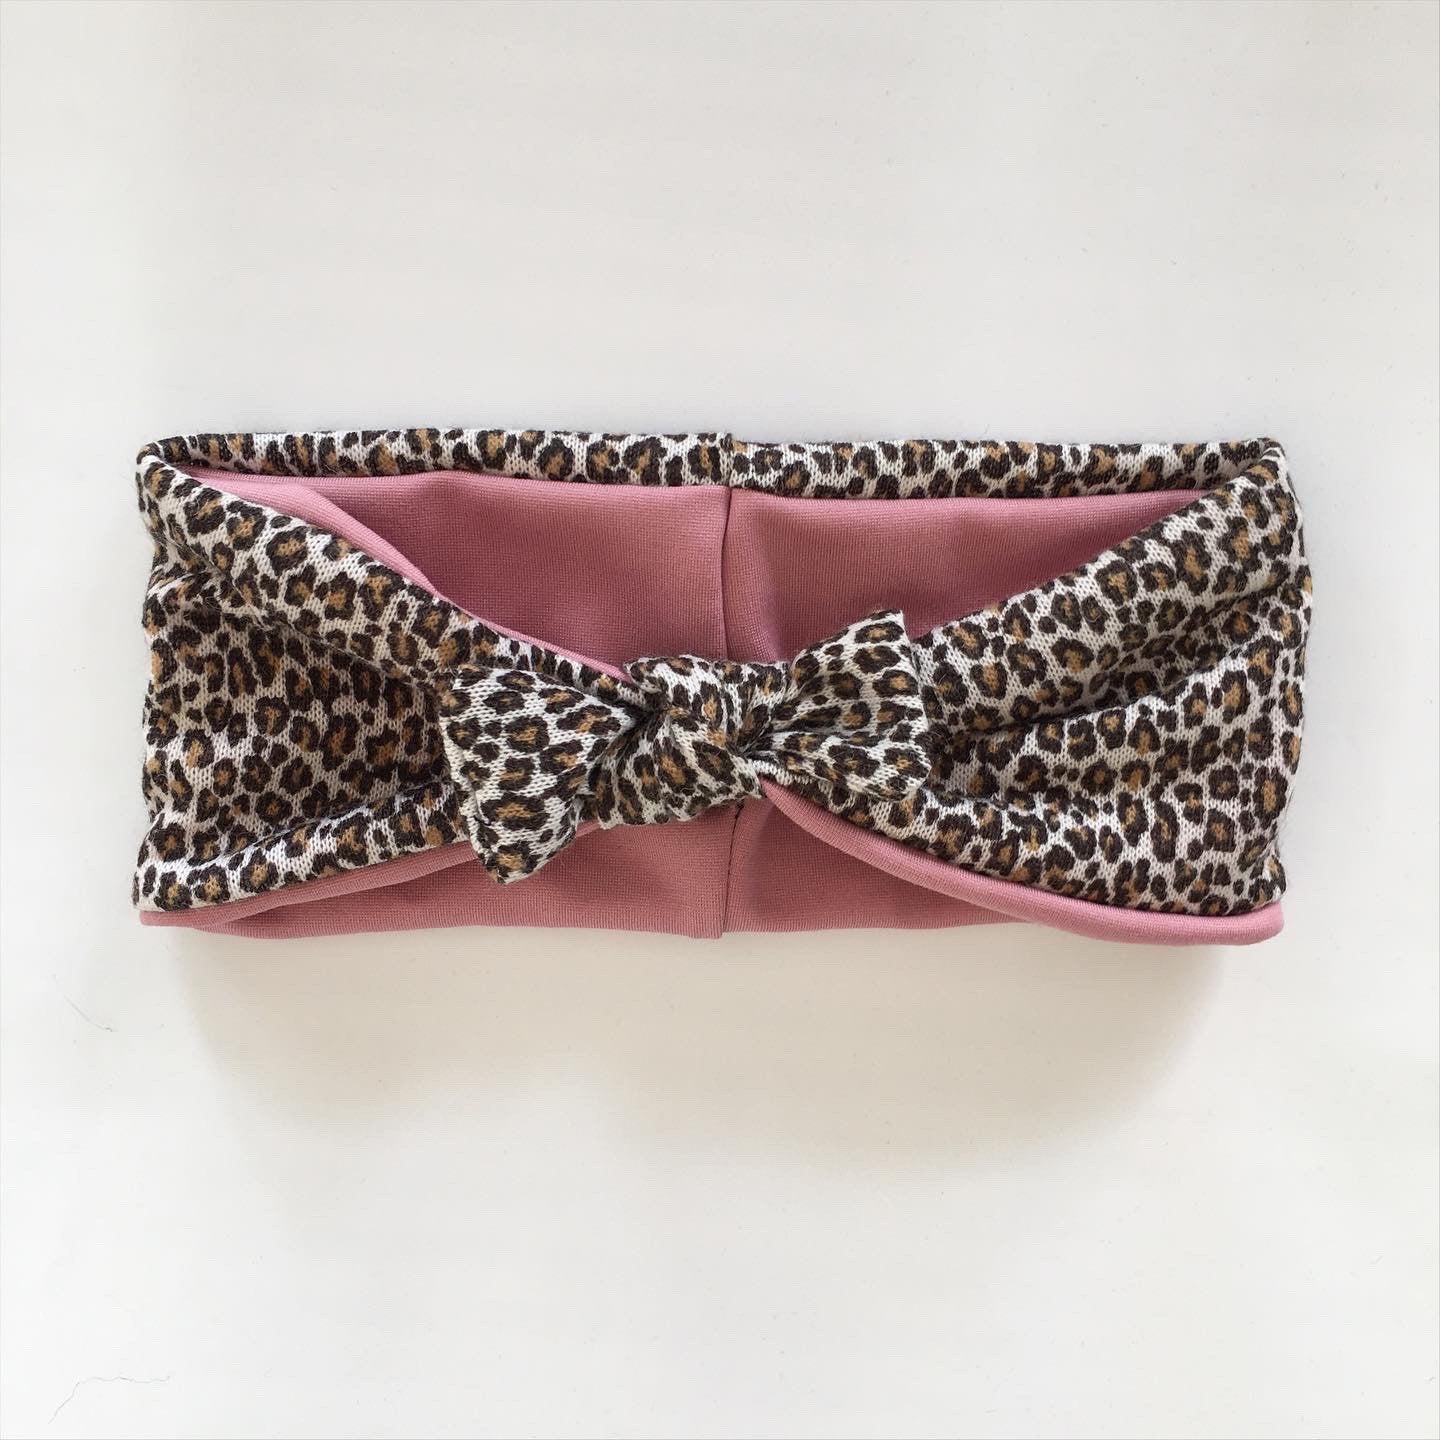 Pandebånd i fint leopard strik med rosa stretch - TrikkerDesign